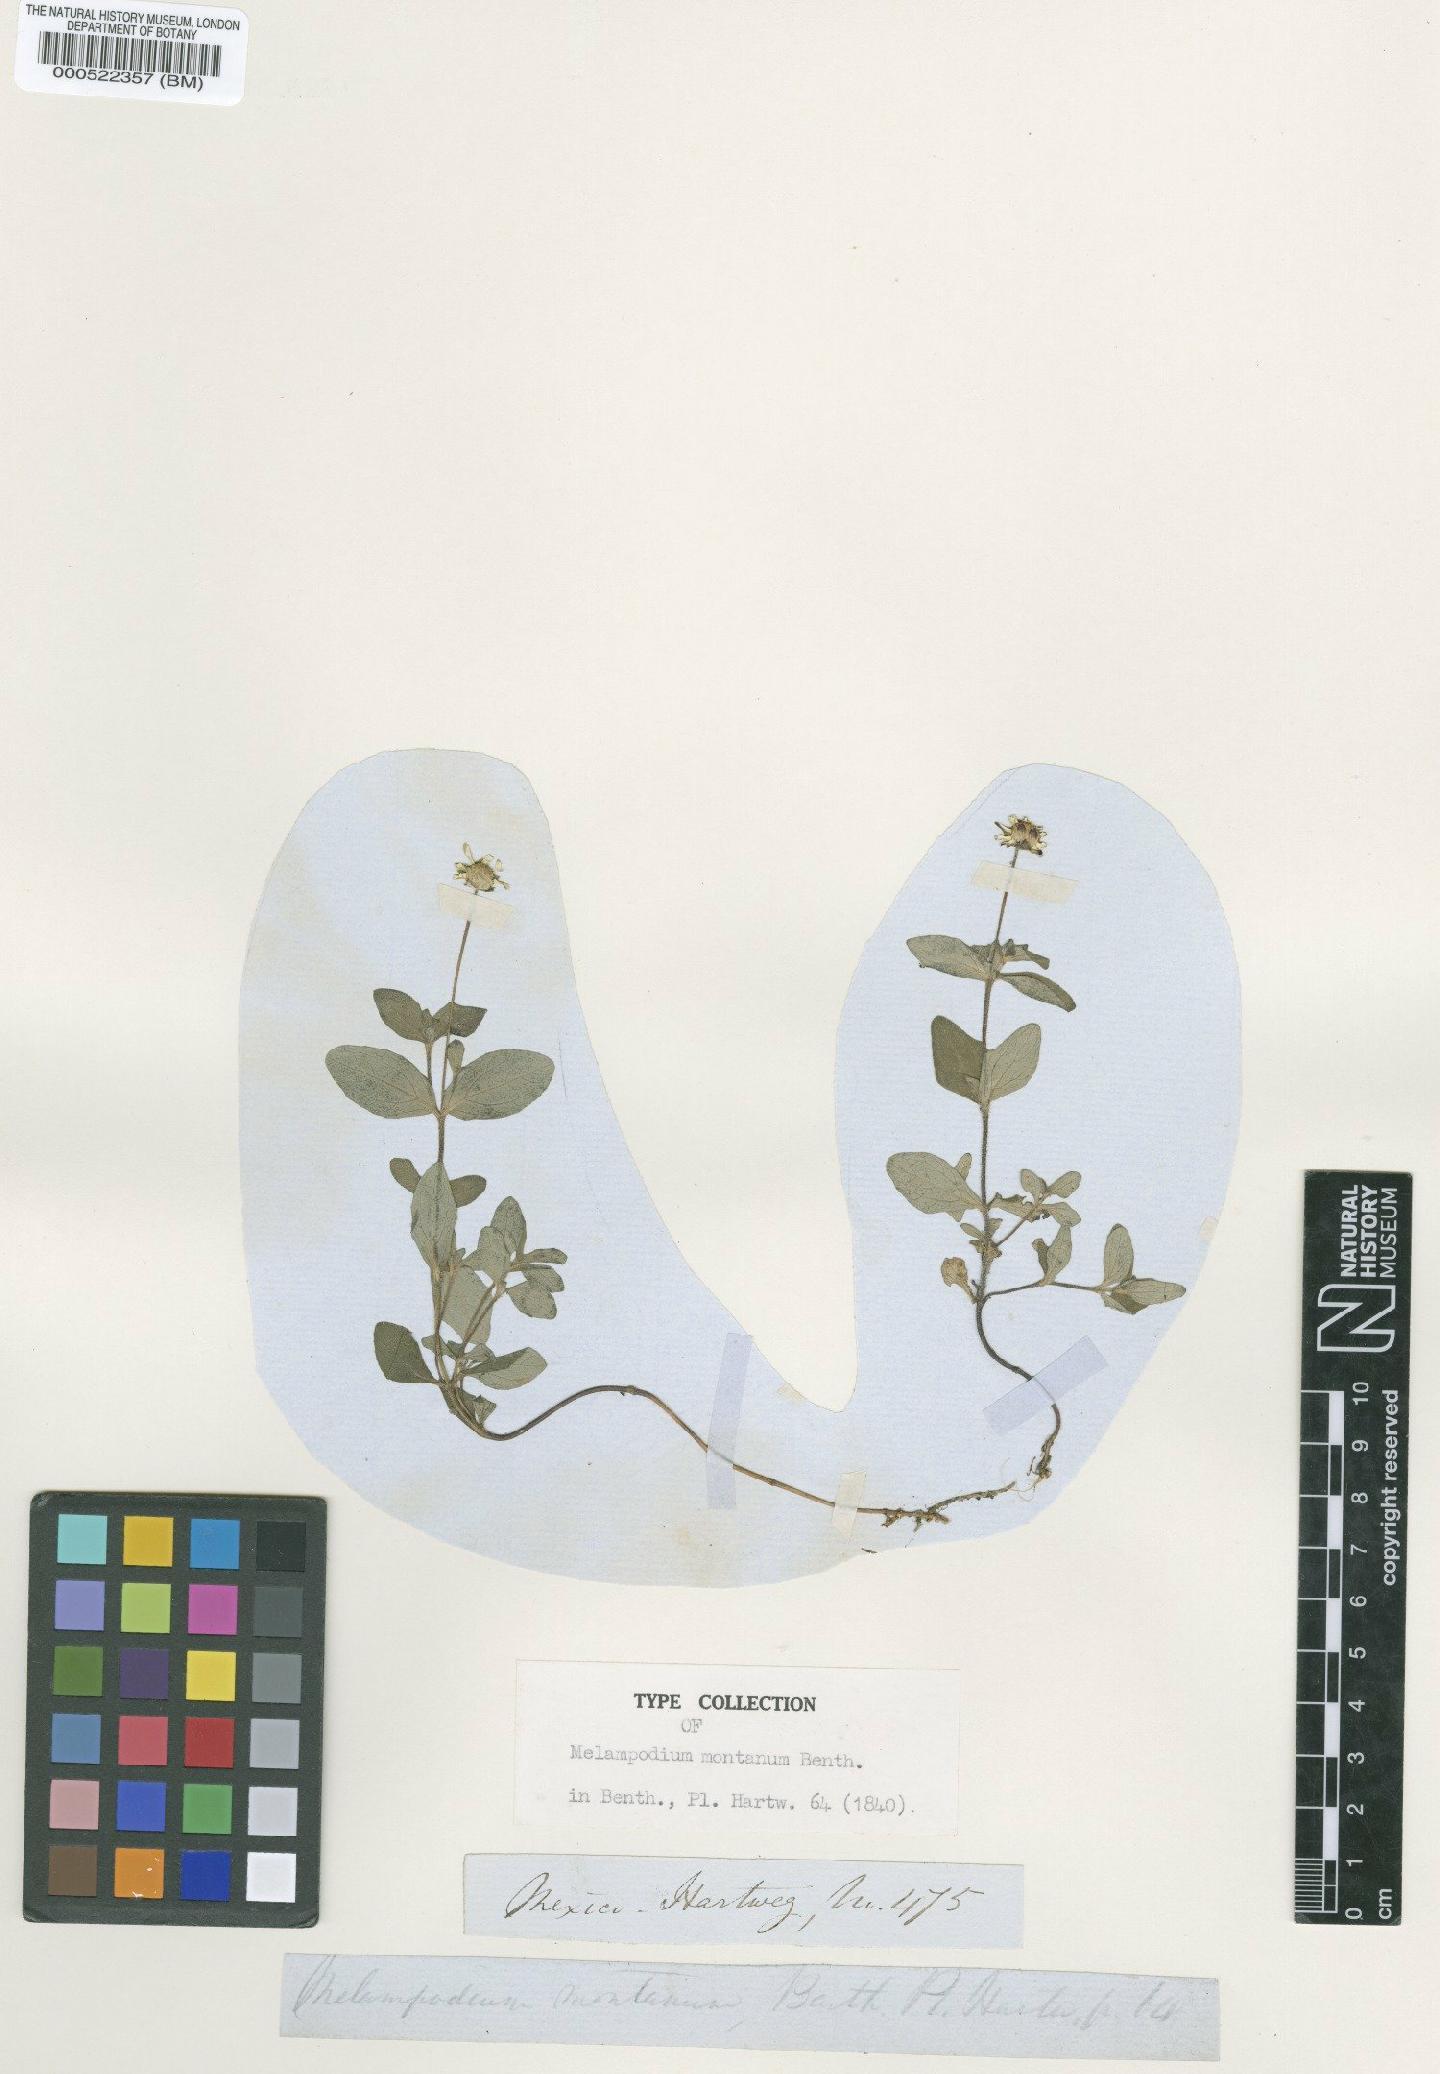 To NHMUK collection (Melampodium montanum Benth.; Isotype; NHMUK:ecatalogue:4977250)